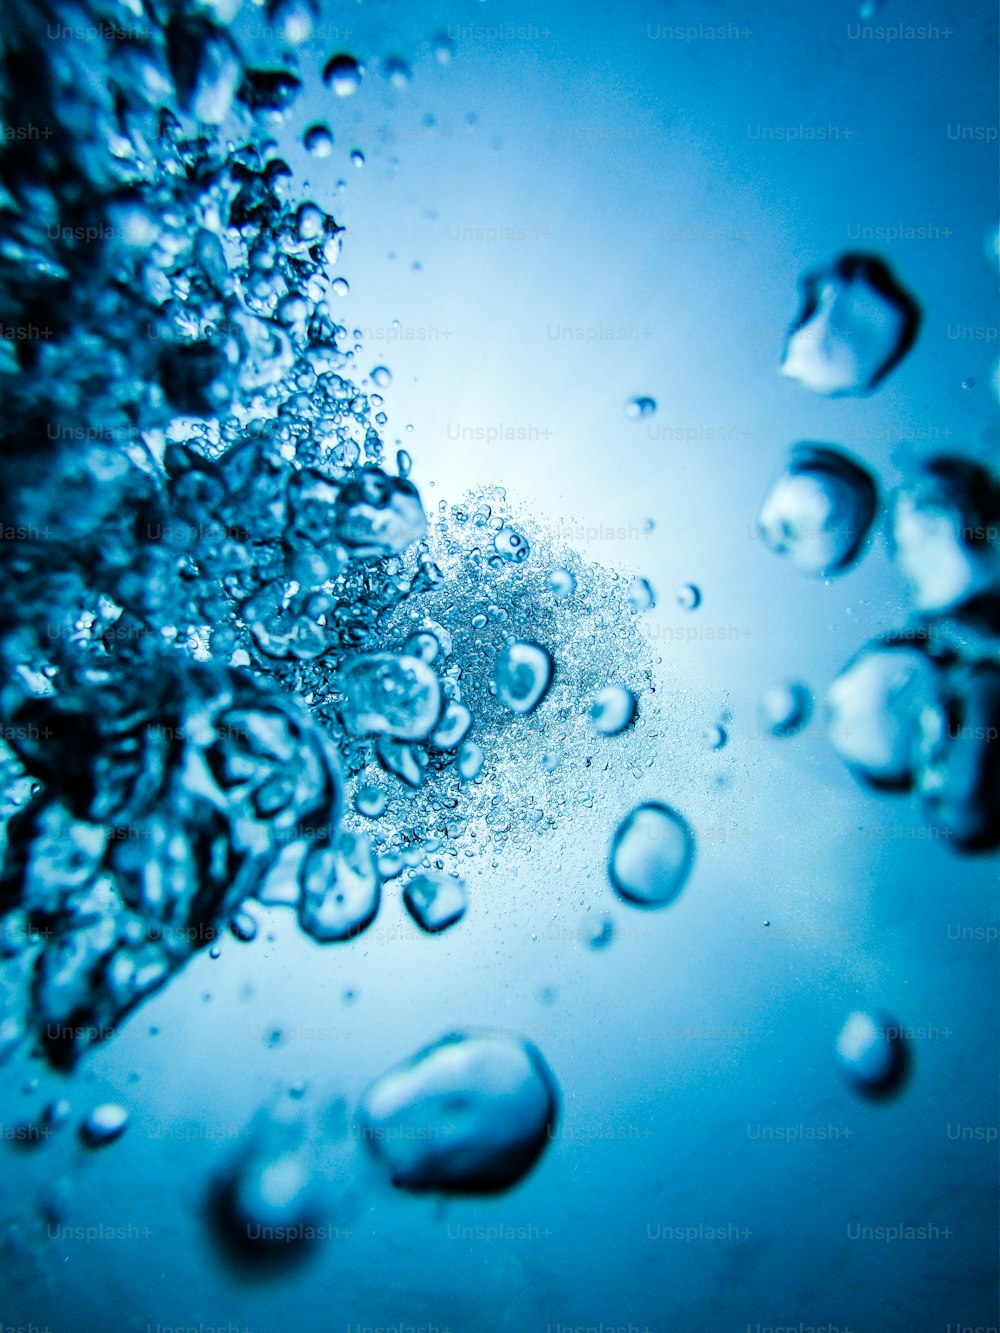 um close up de bolhas de água em uma superfície azul